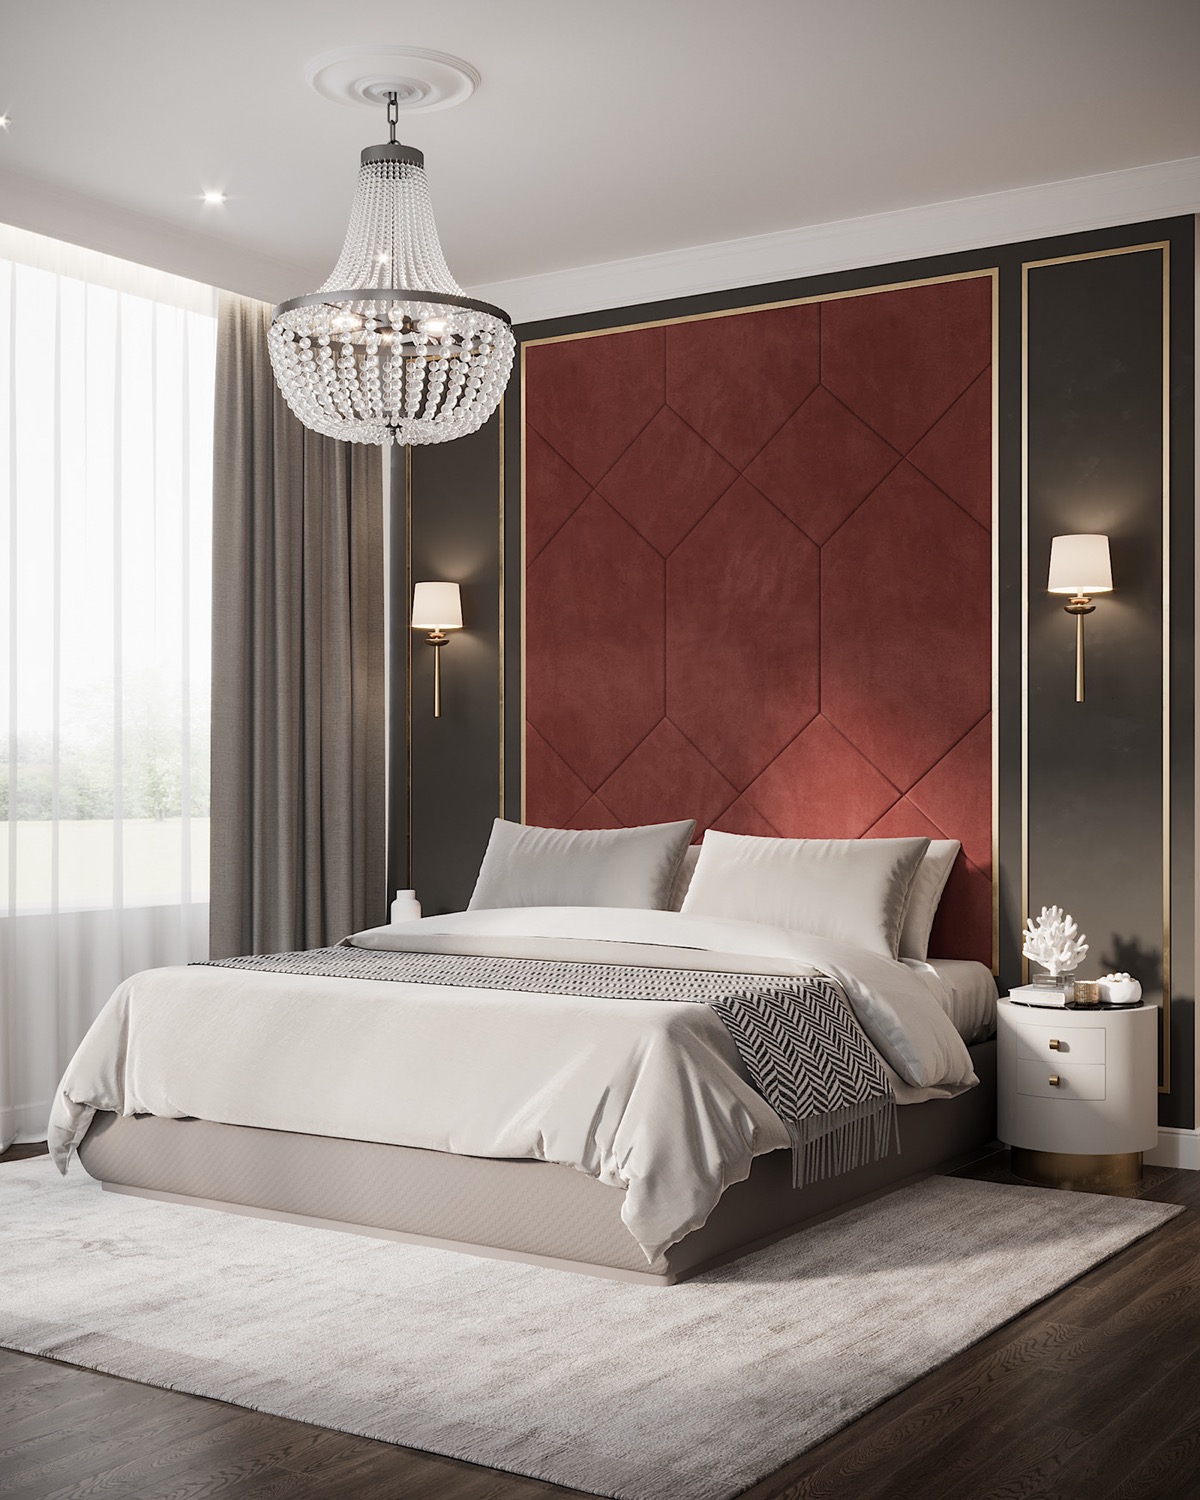 唯美中式风格新婚卧室红色窗帘效果图- 中国风